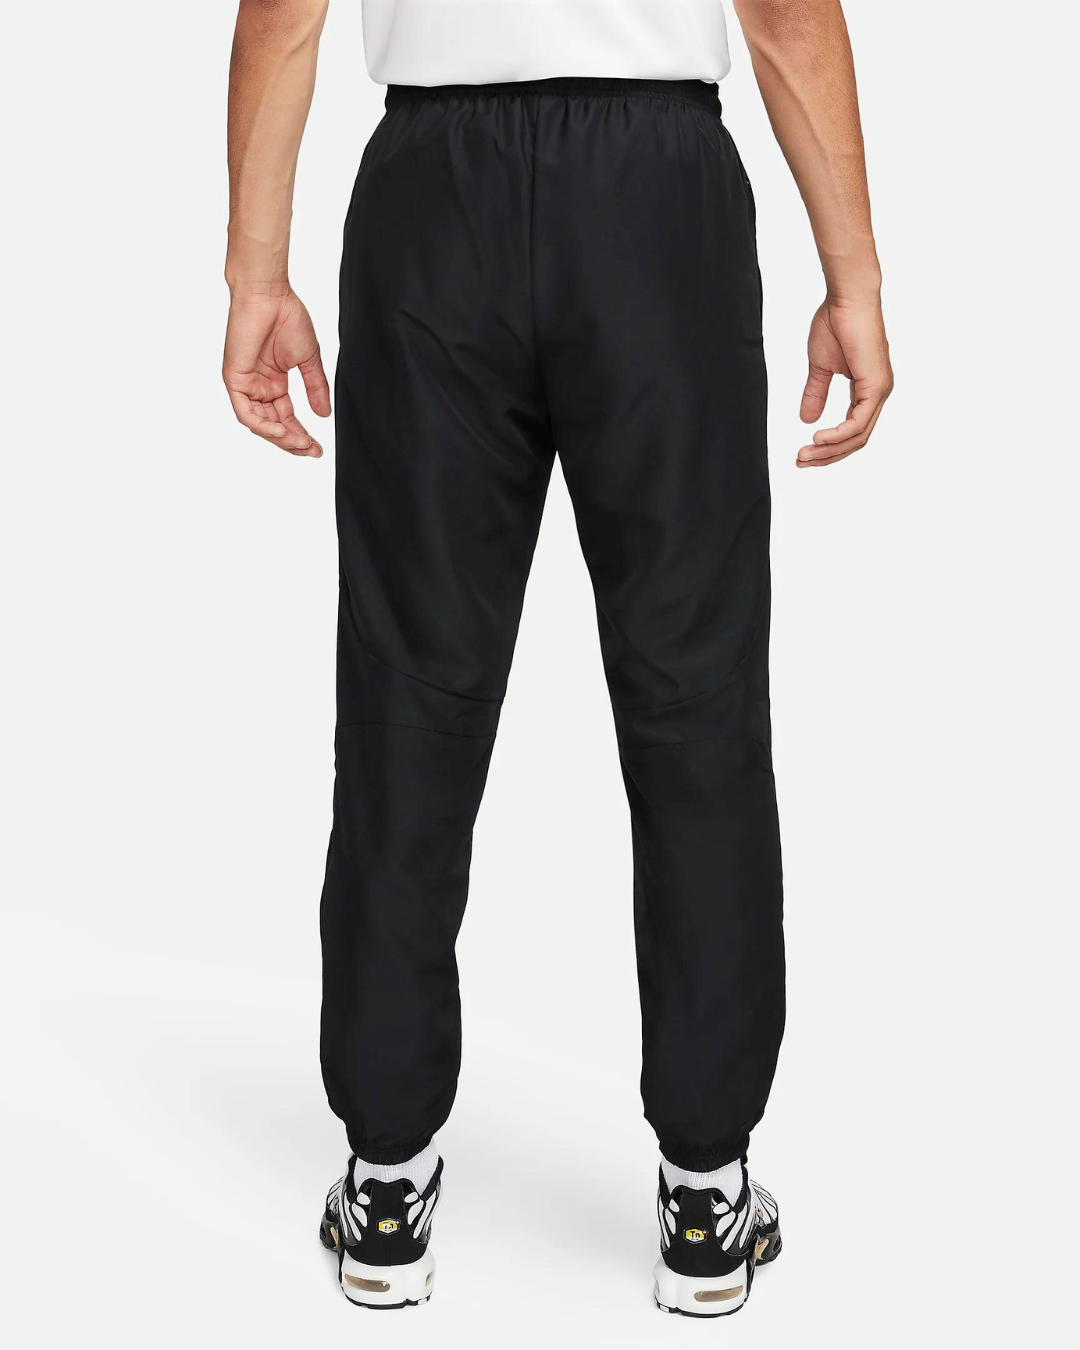 Pantalon Nike Academy Dri-Fit - Noir